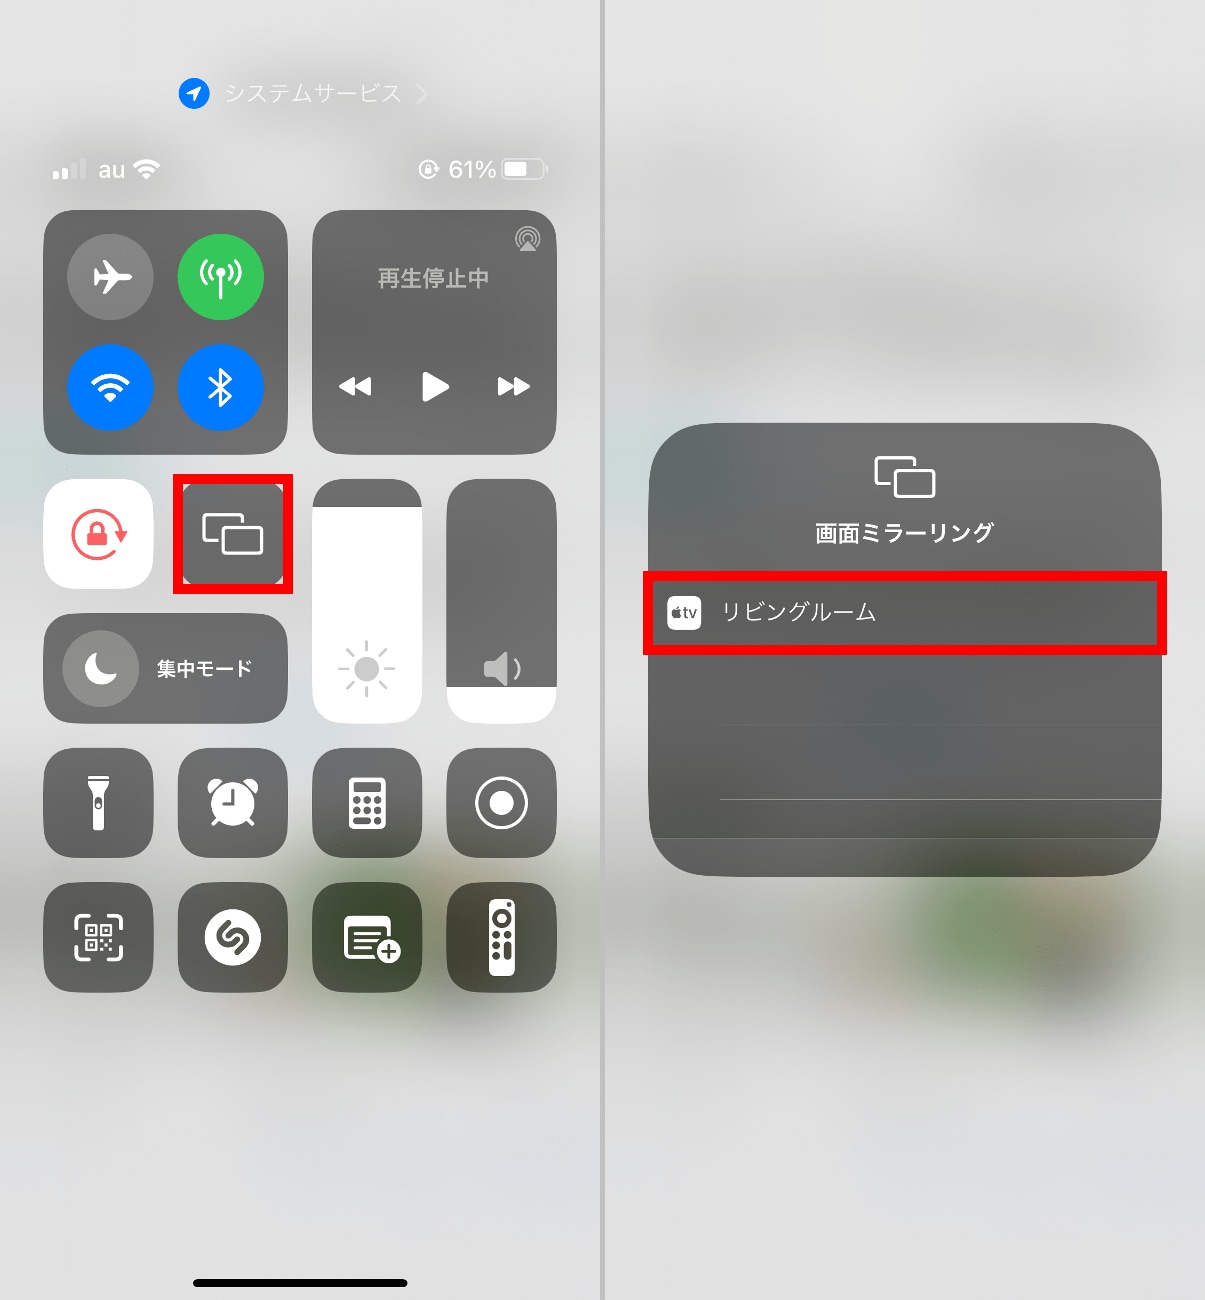 iPhoneはコントロールセンターを開き、四角が2つ重なったアイコン（画面ミラーリング）をタップします（左）次の画面でリストに何らかのデバイスが表示されている場合、タップするだけで画面の出力が行なえます（右）